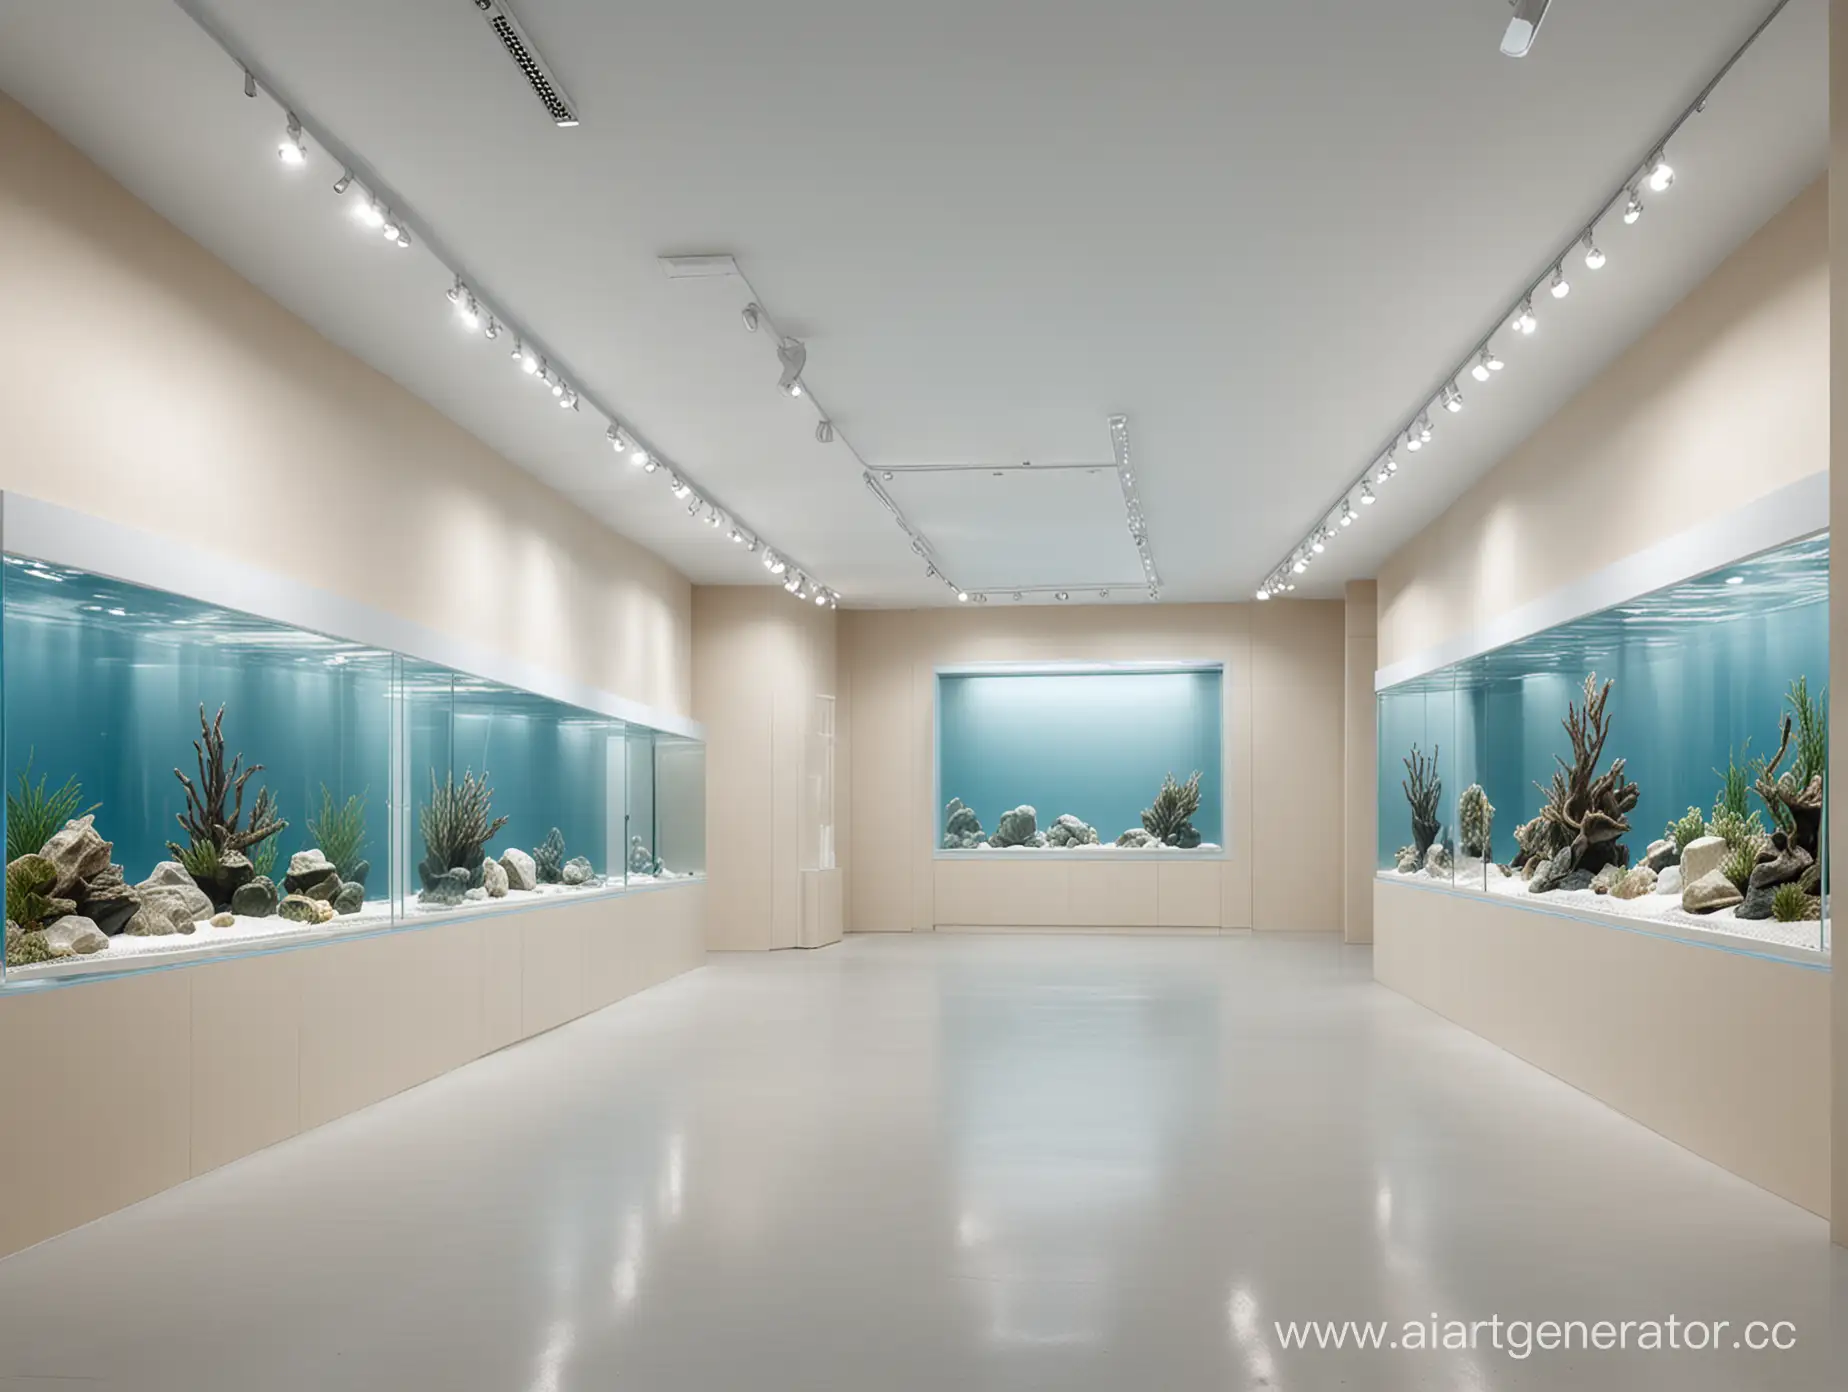 дизайн выставочного пространства для аквариумов, бежевые, белые и нежно-голубые оттенки, необычные обтекаемые формы 